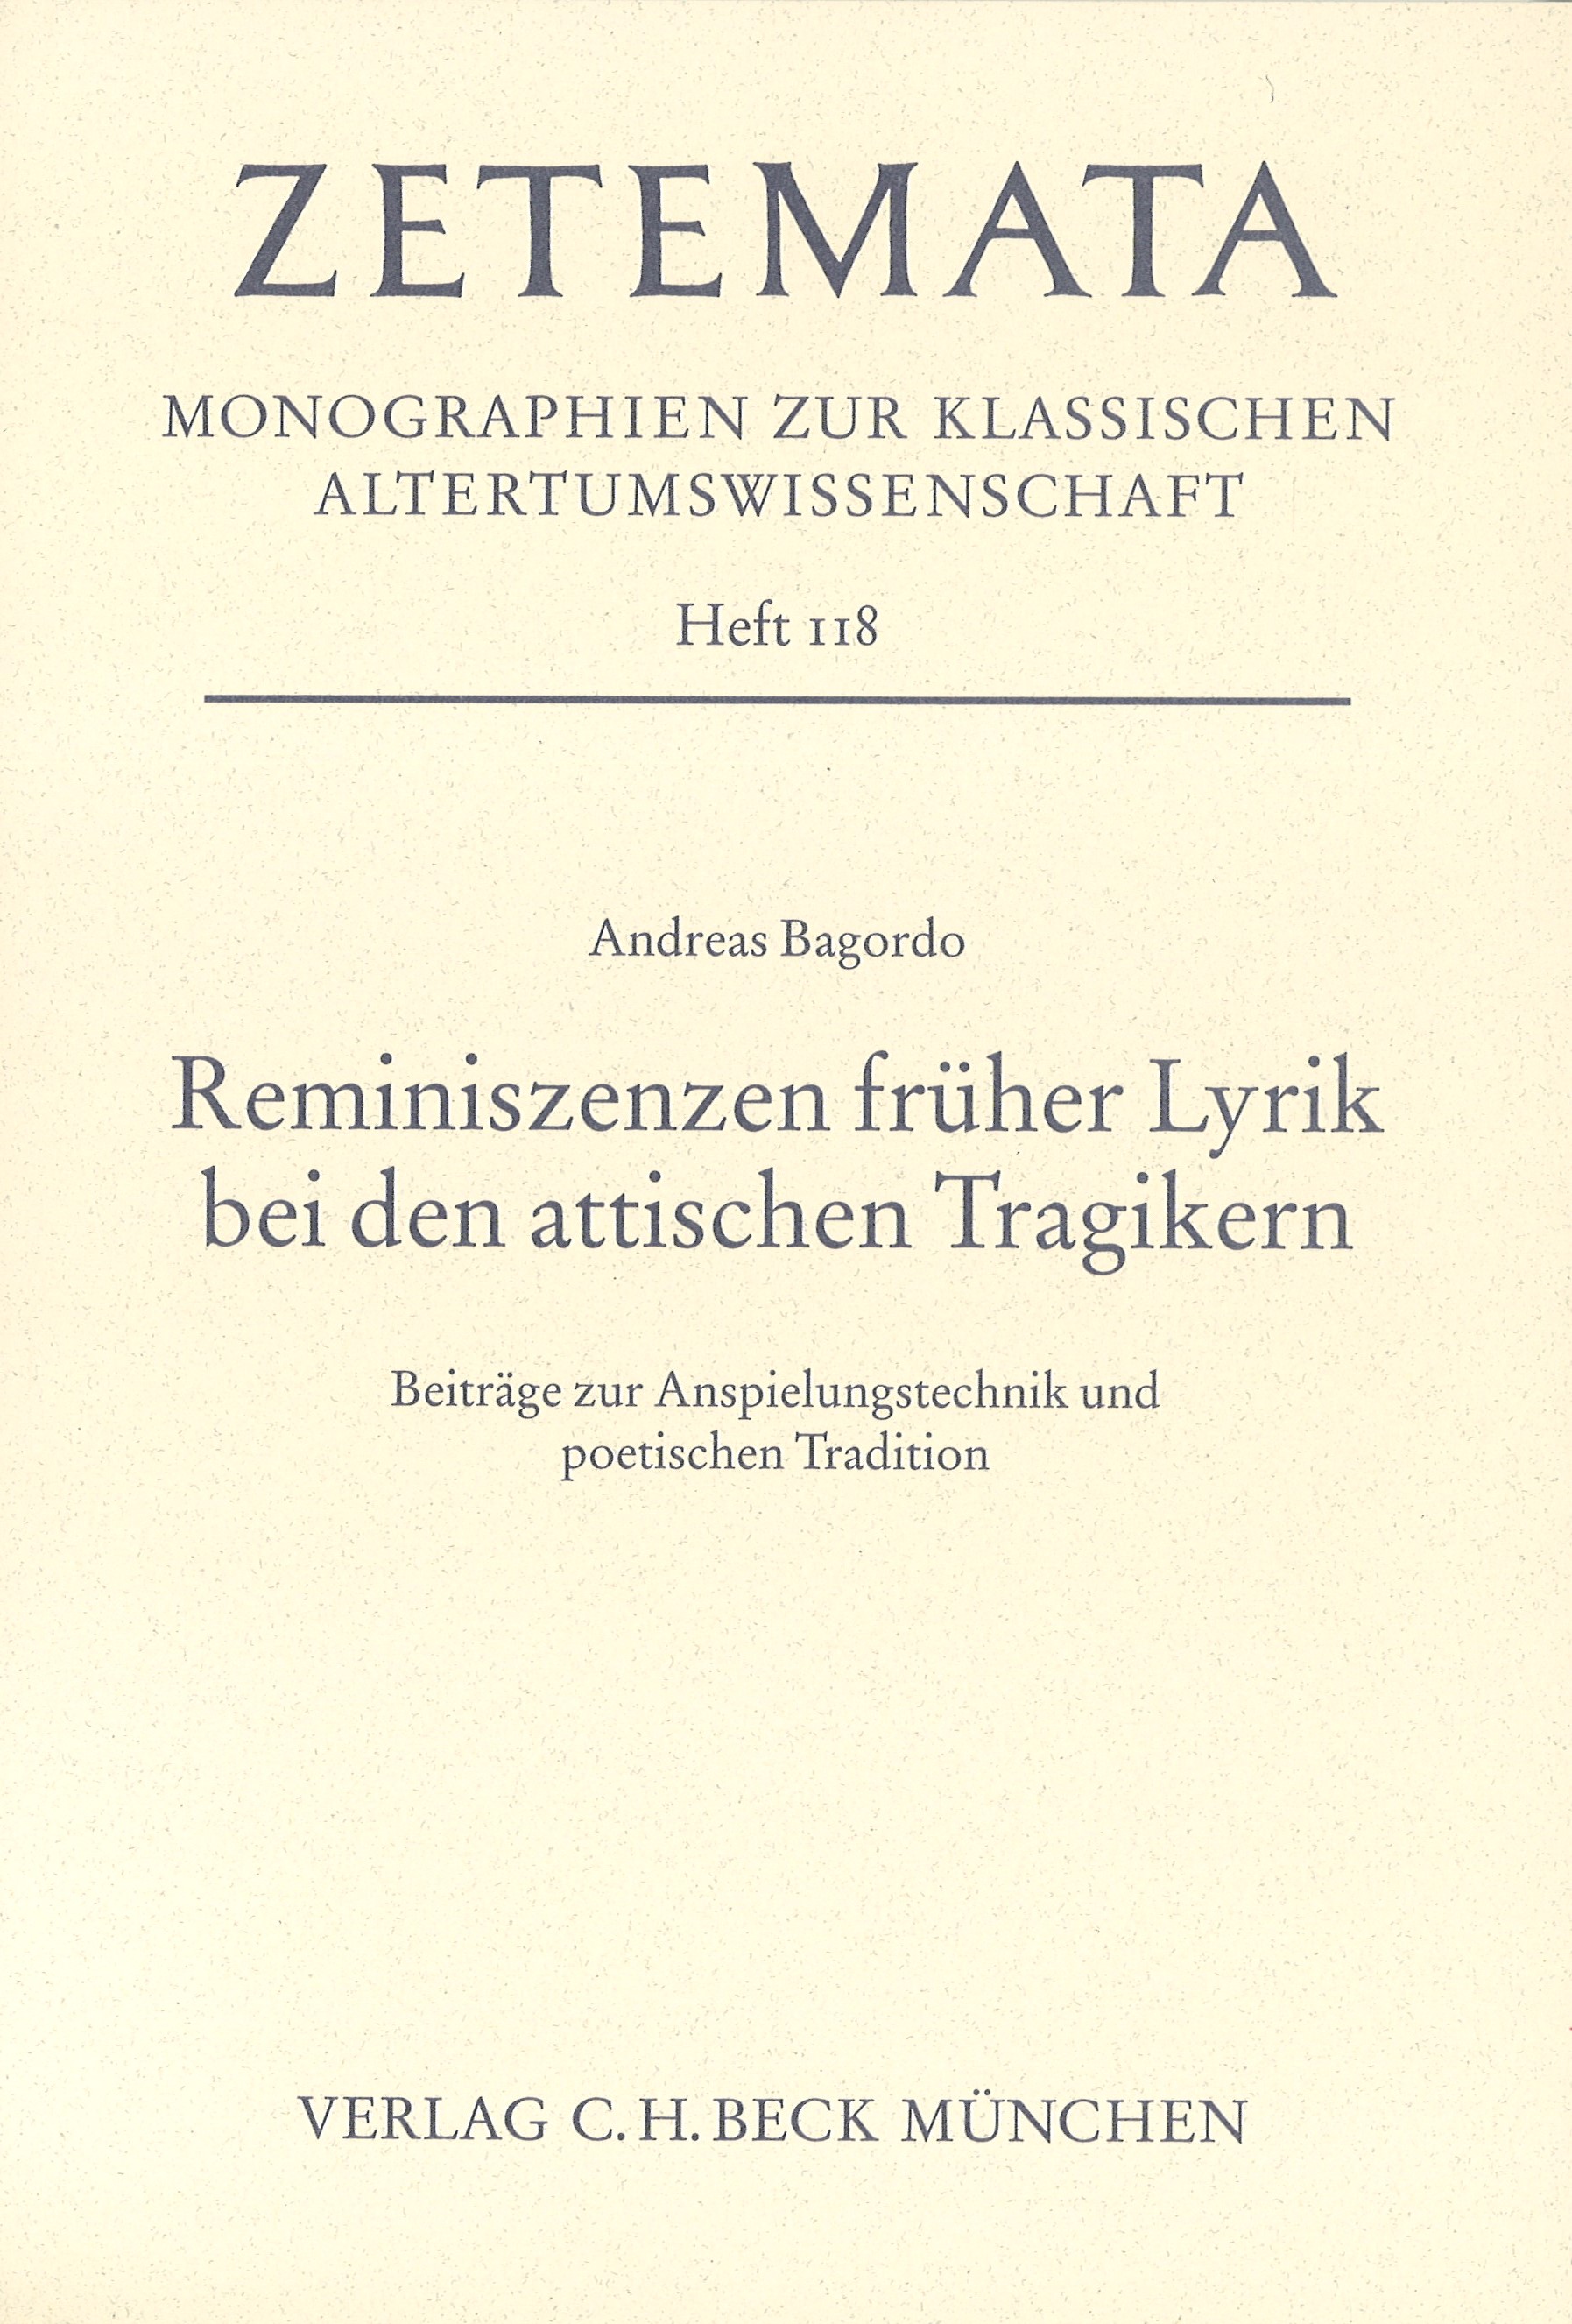 Cover: Bagordo, Andreas, Reminiszenzen früher Lyrik bei den attischen Tragikern